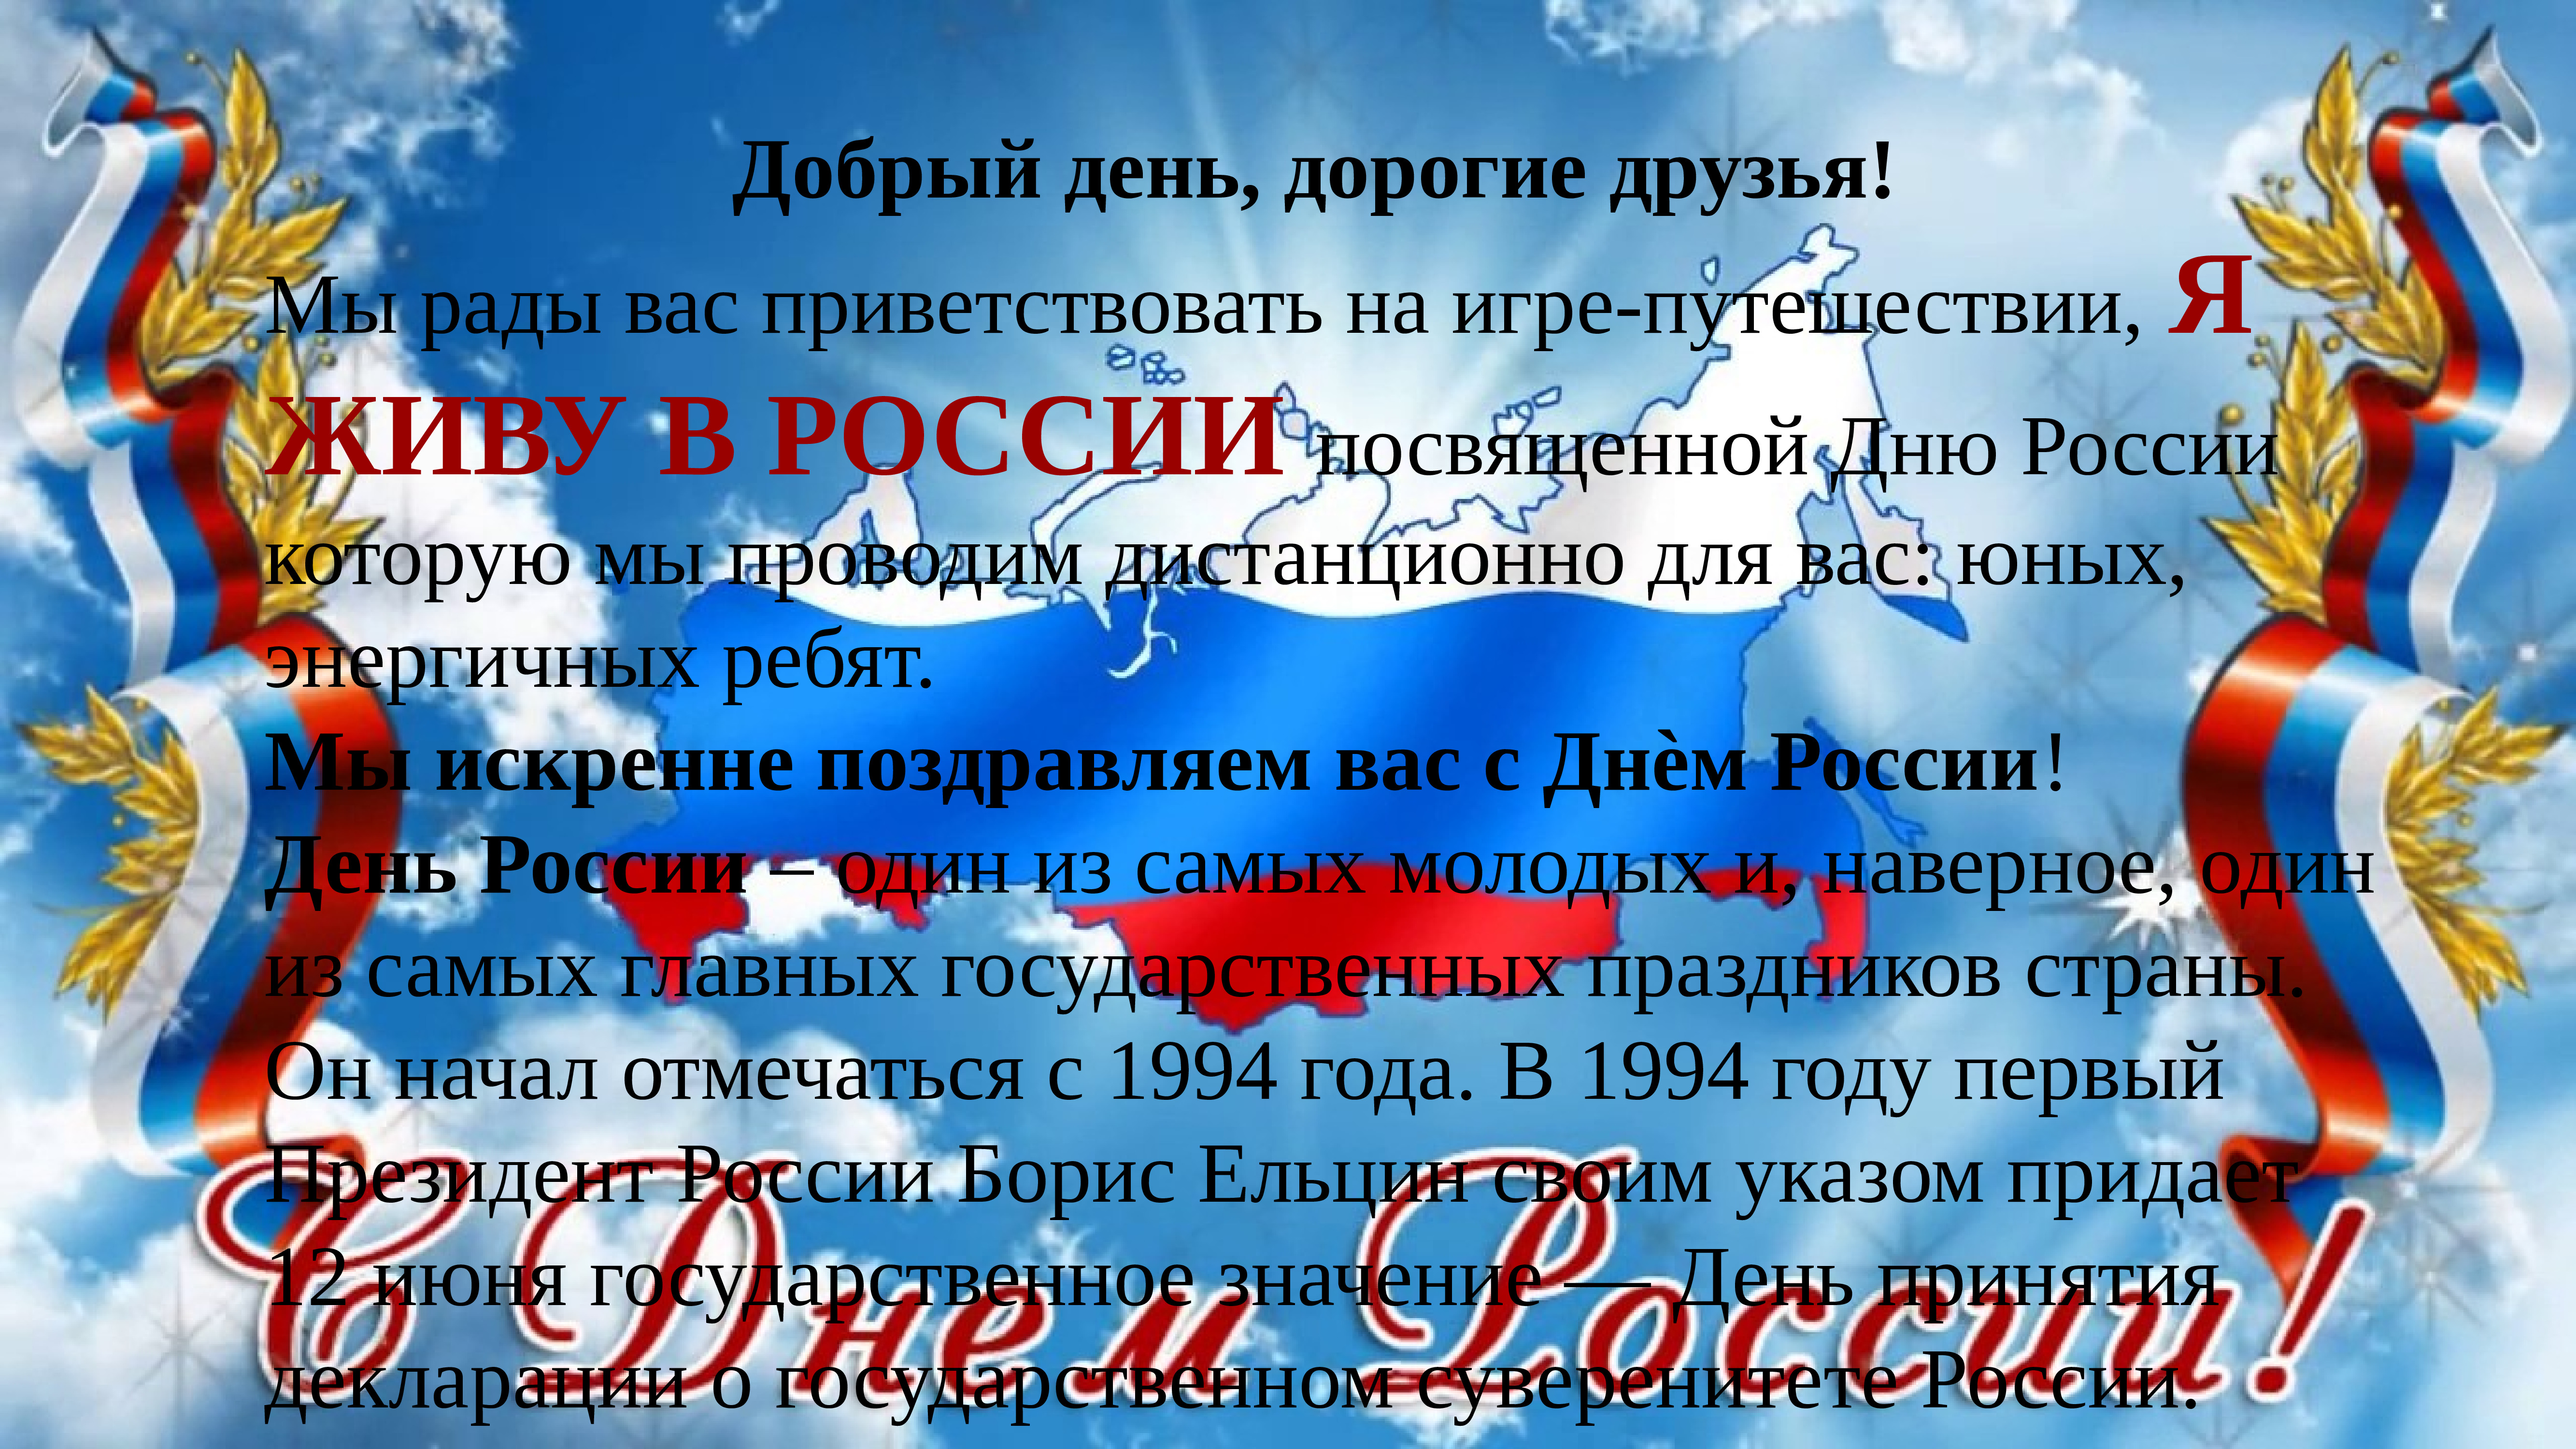 12 июня 2019 г. 12 Июня. Поздравления с днём России 12 июня. Поздравления с днёросс. День независимости России.